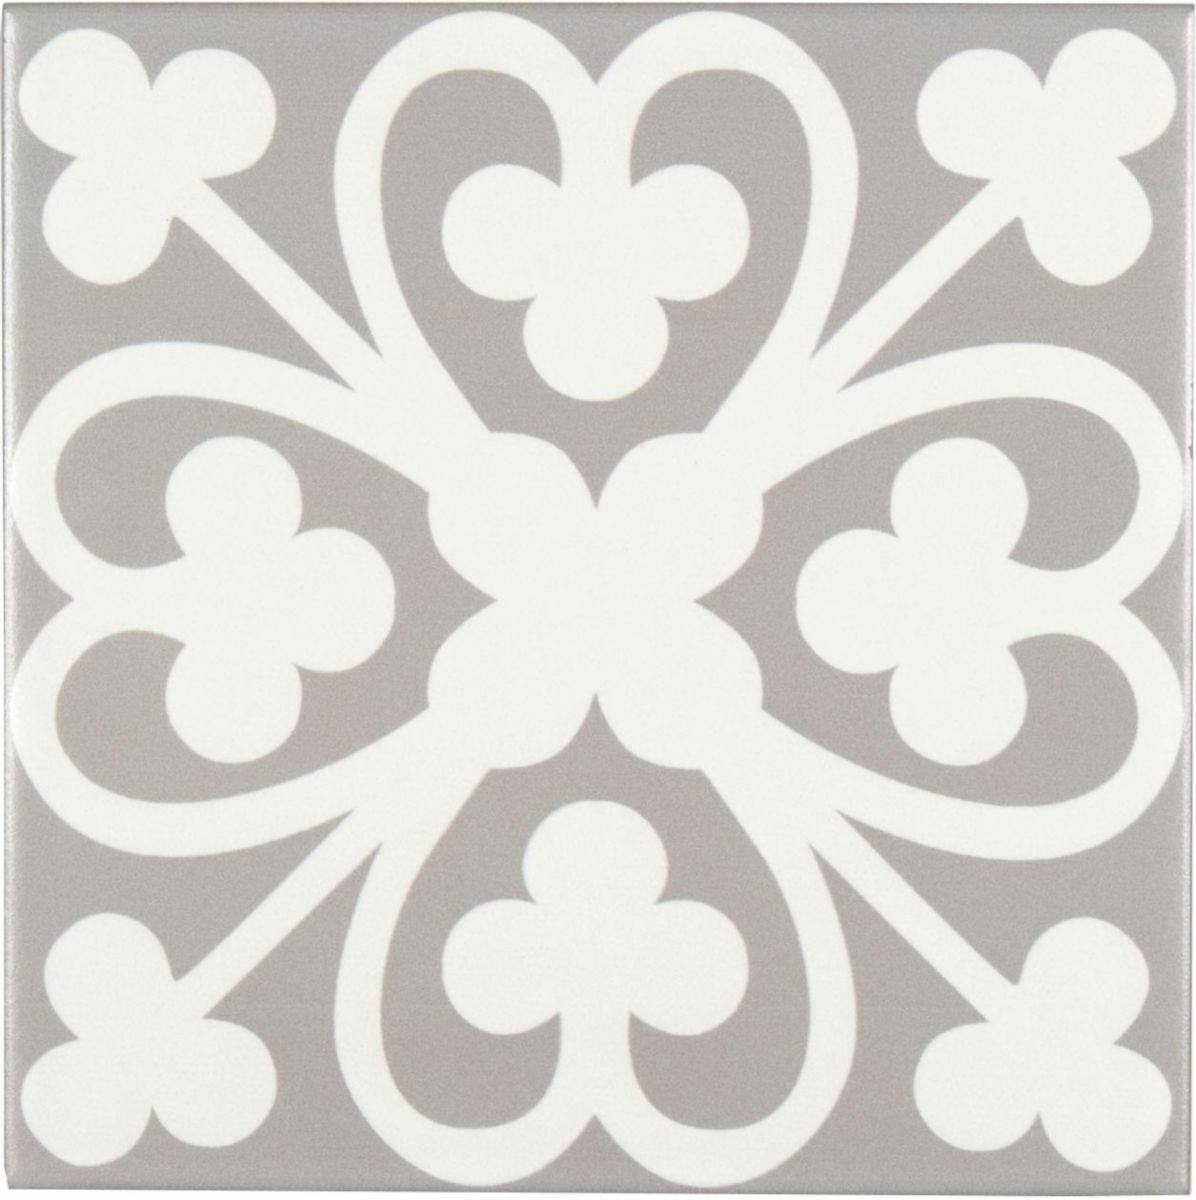 IMITATION CARREAUX CIMENT - Carreau ceramique décor classique pétale blanc gris clair 11 mm 20 x 20 cm CEMI41